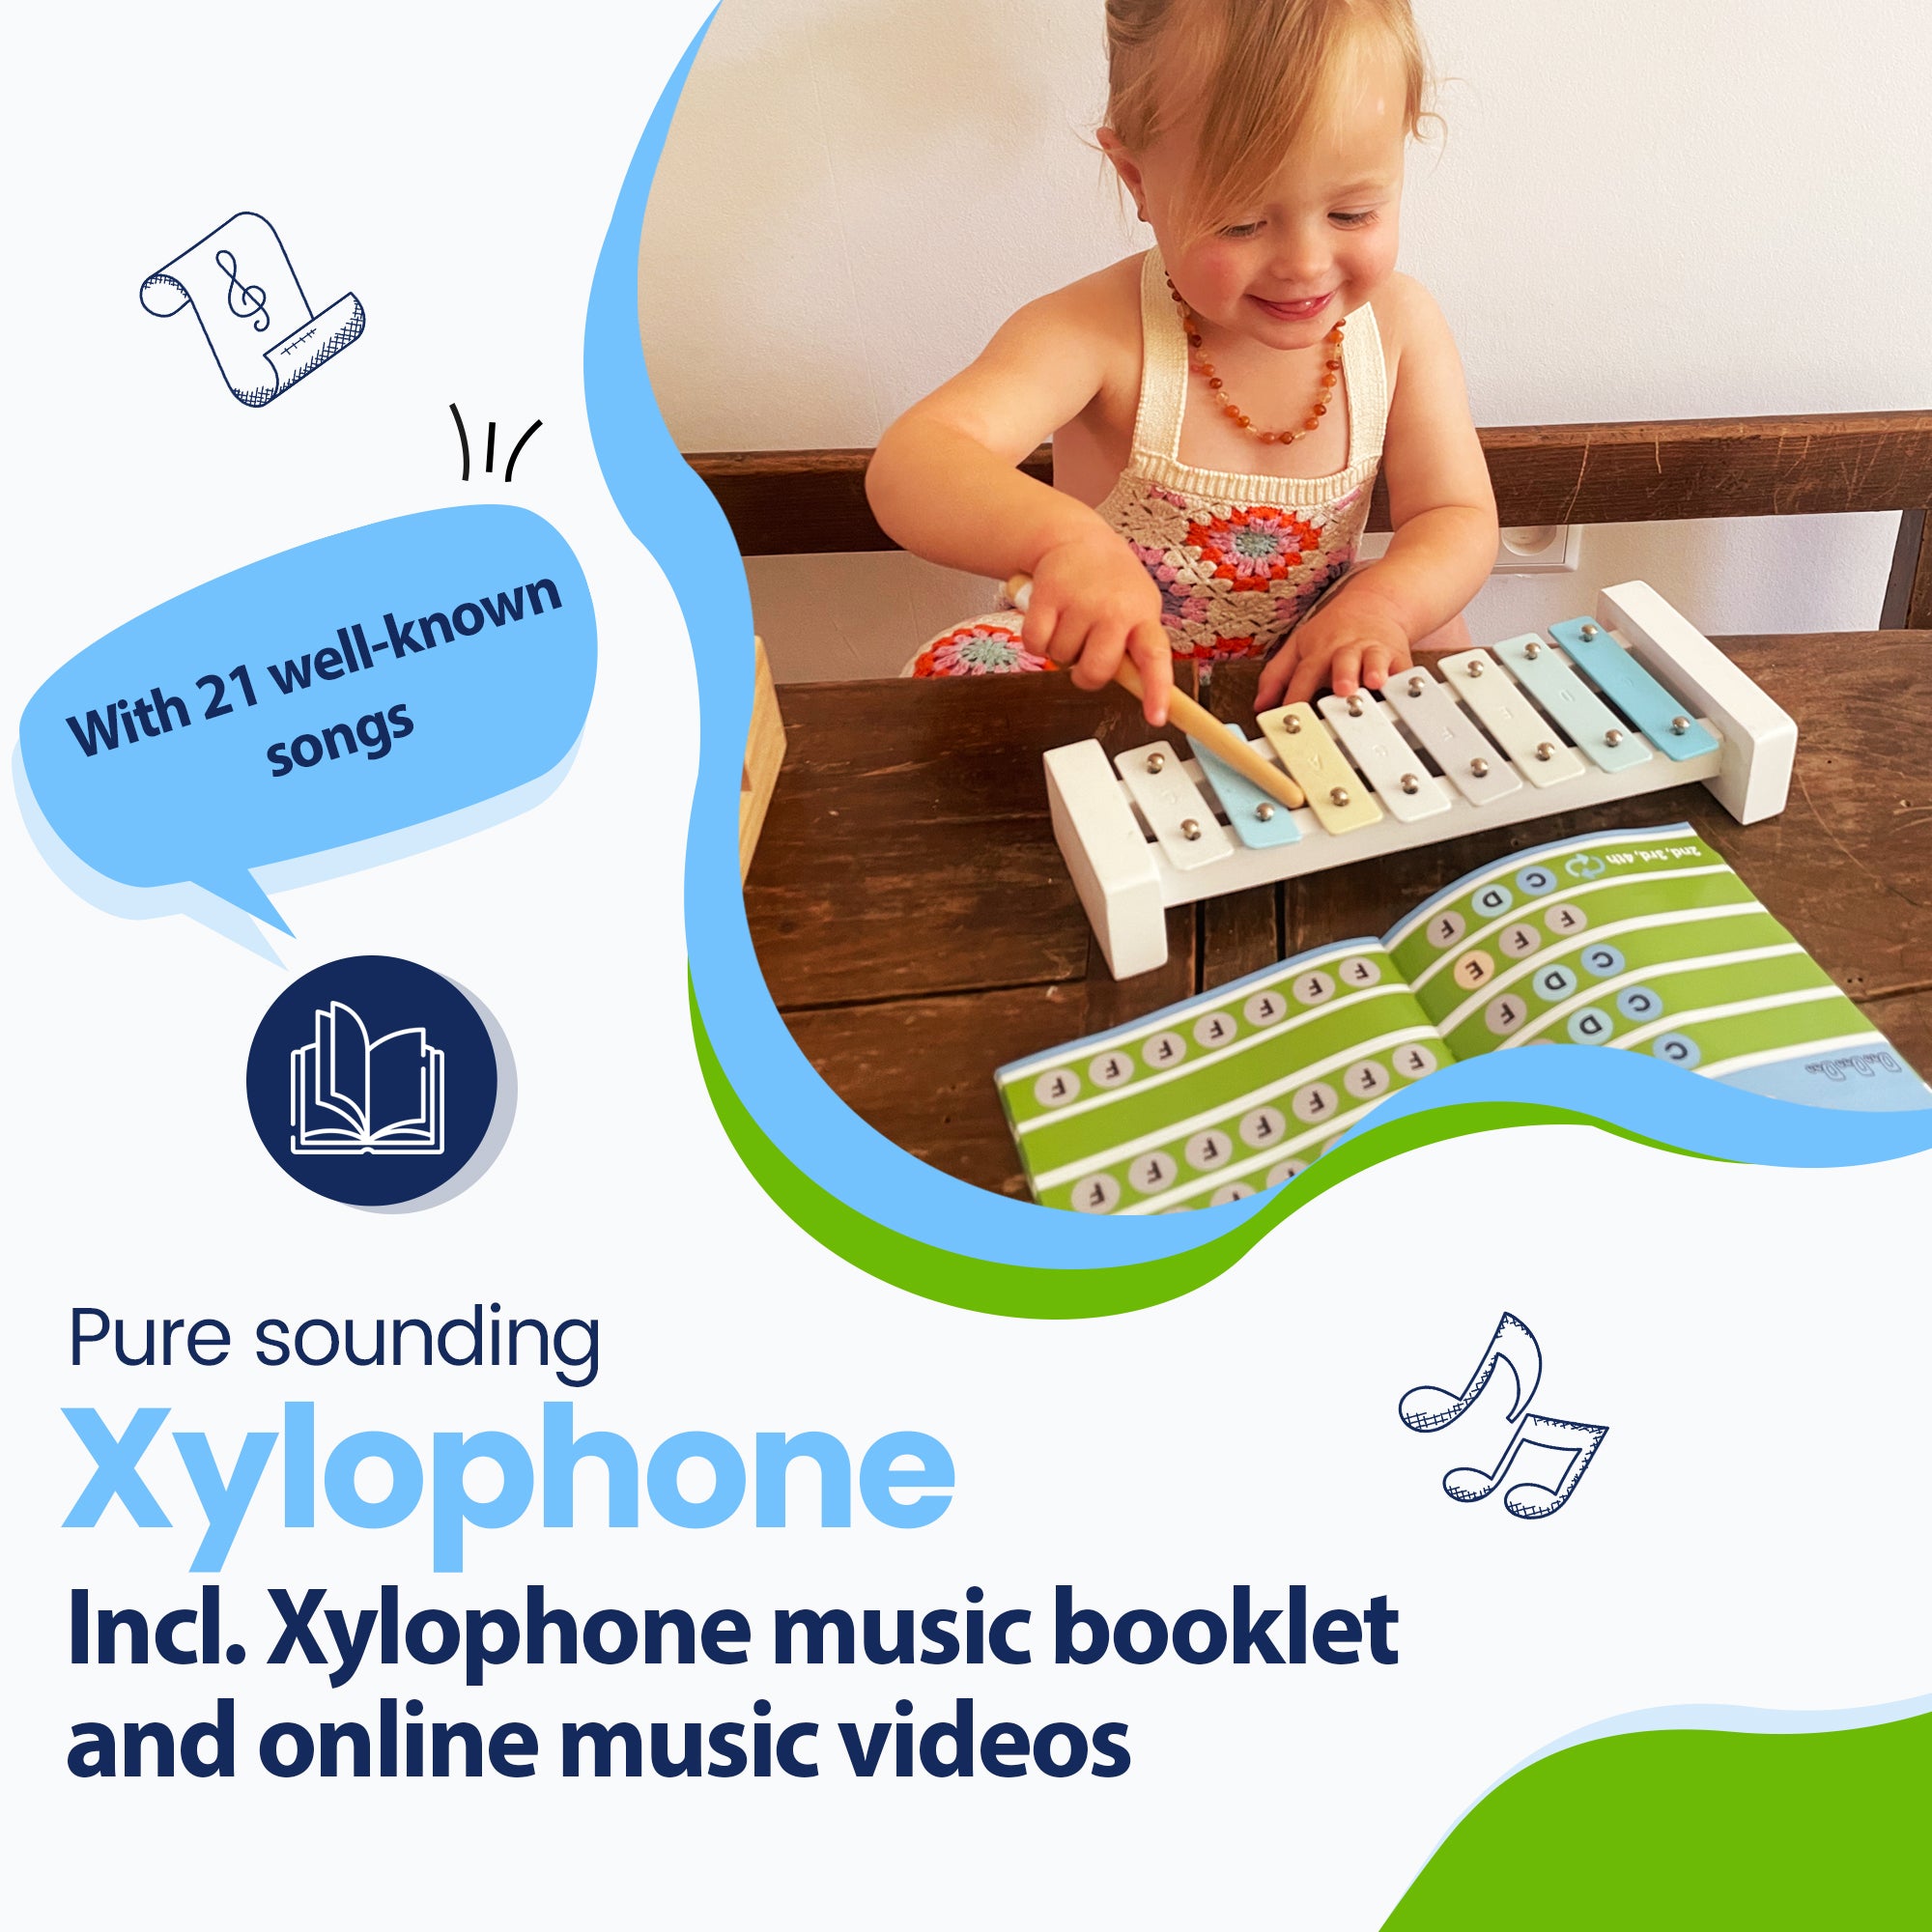 ¡Con 21 canciones conocidas! Xilófono de sonido puro, incluido folleto de música de xilófono y vídeos musicales en línea